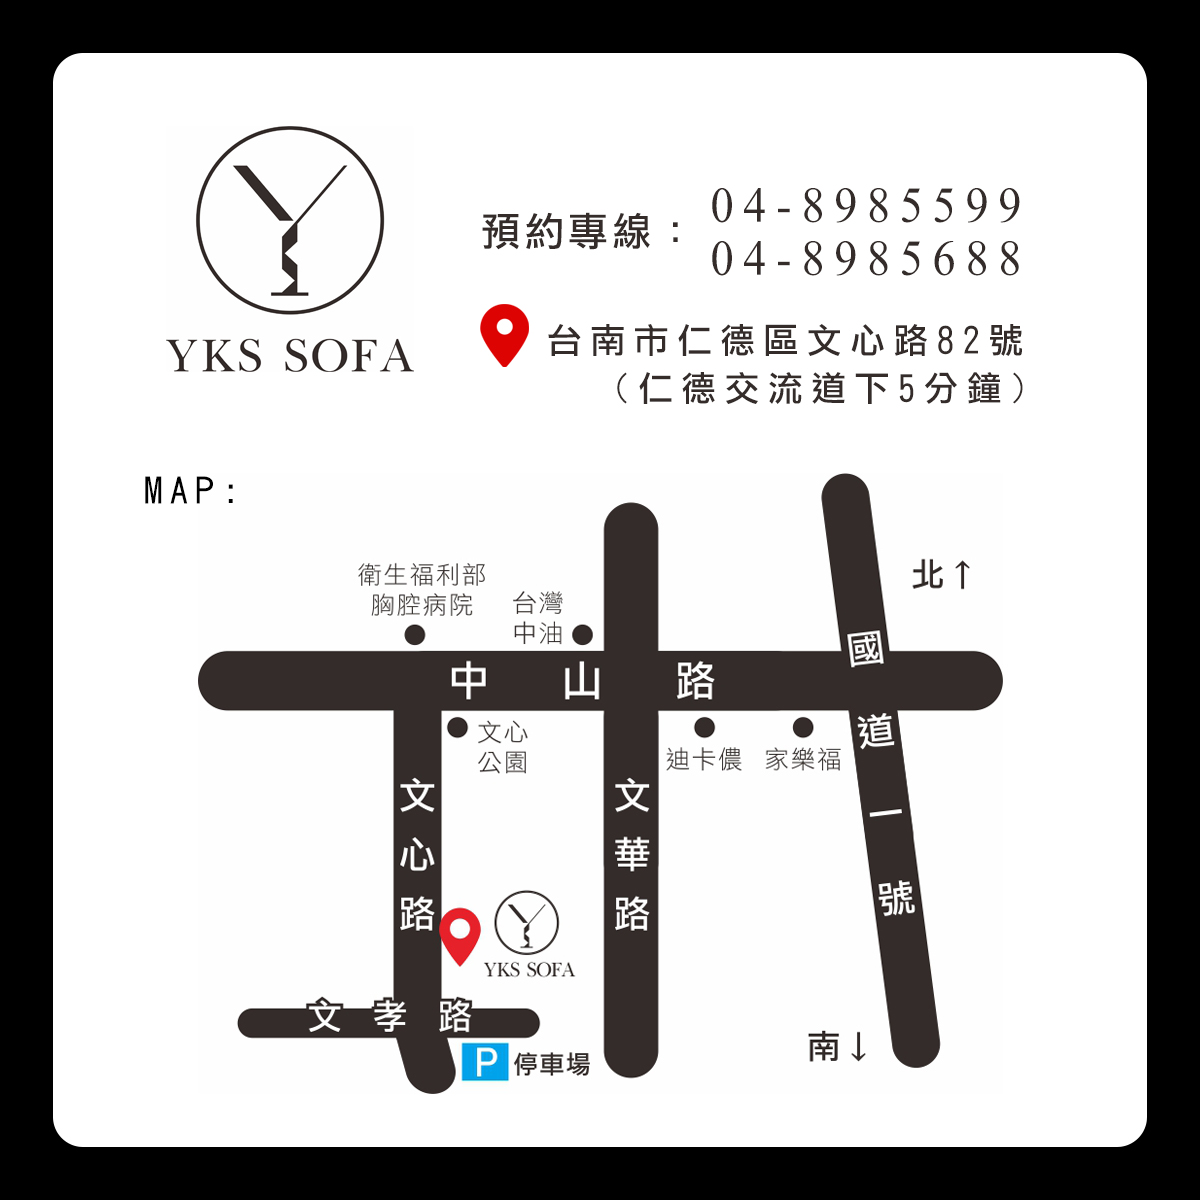 YKS沙發台南門市地址、停車資訊